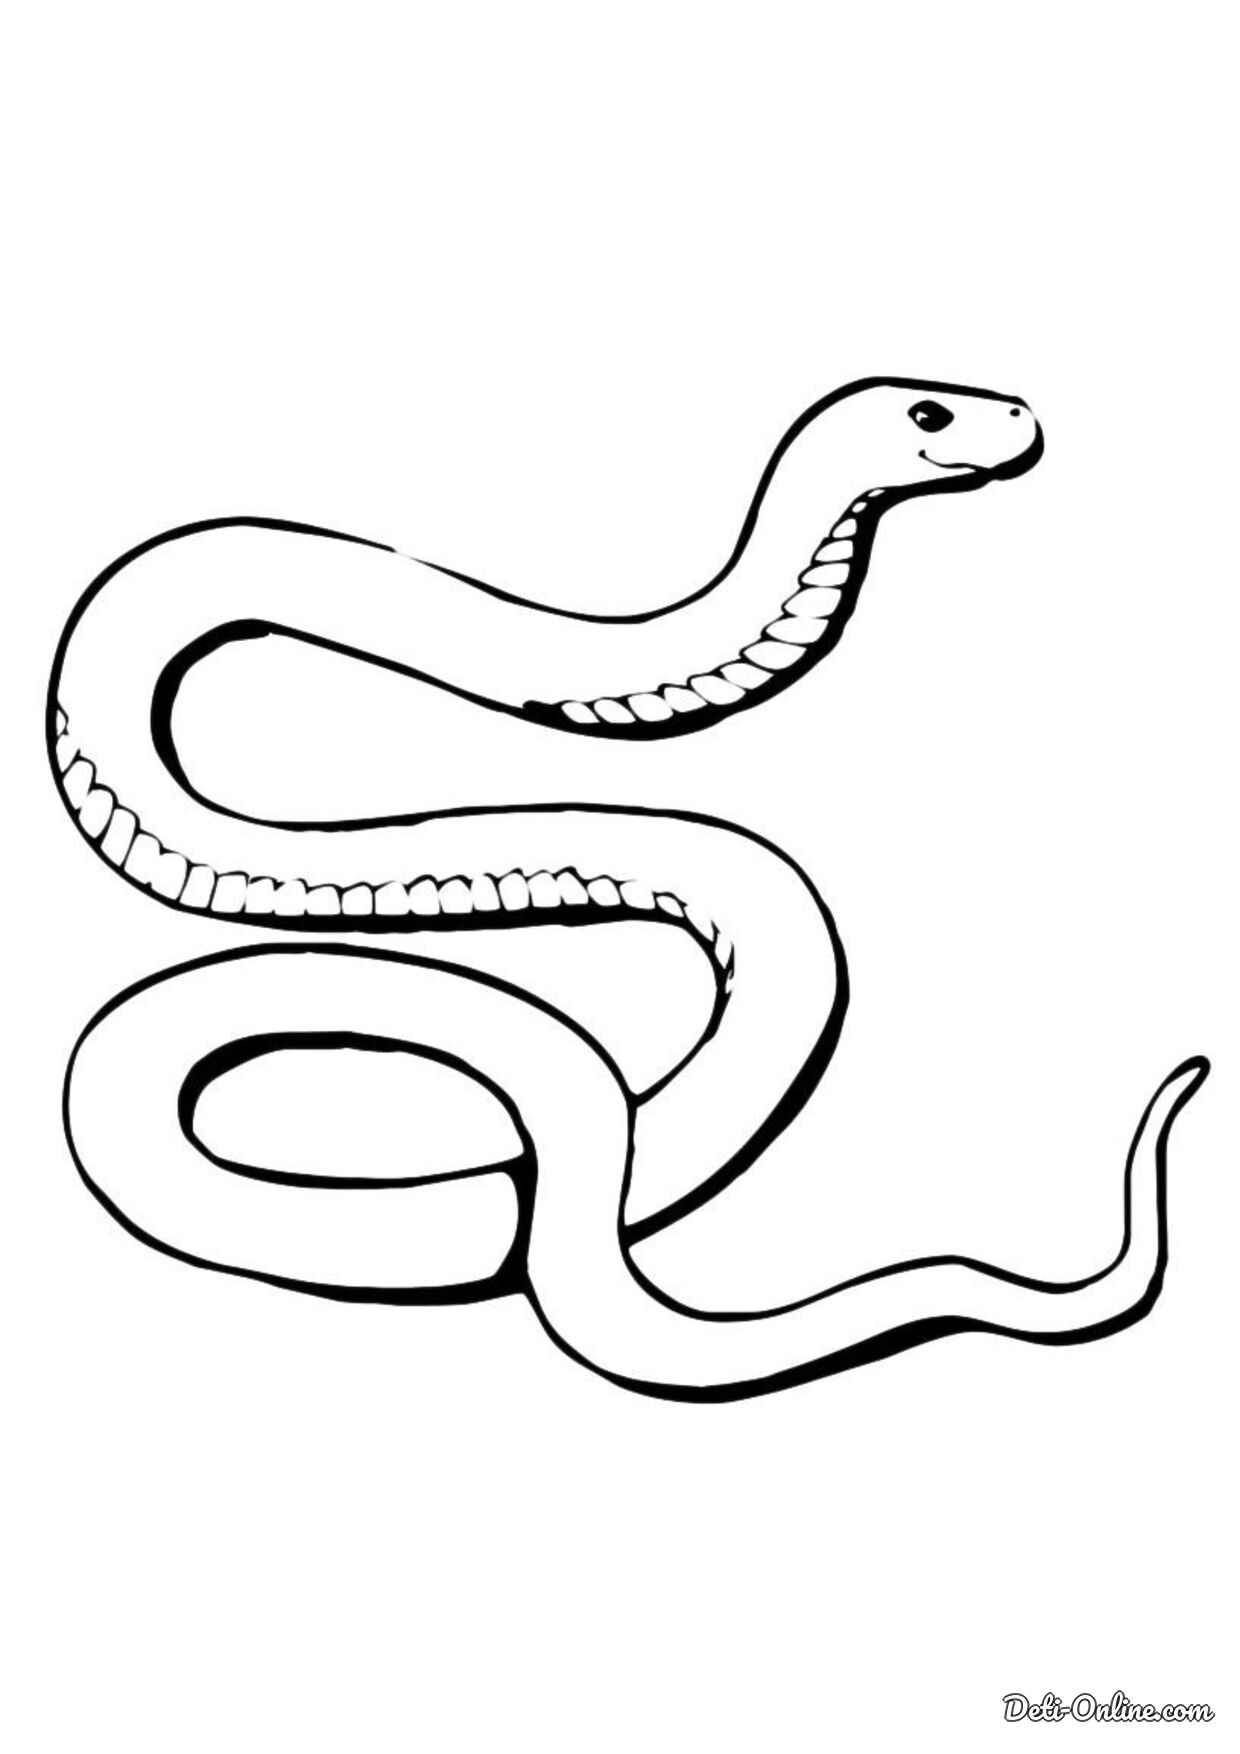 Фото Раскраска змея, более 23 качественных бесплатных стоковых фото